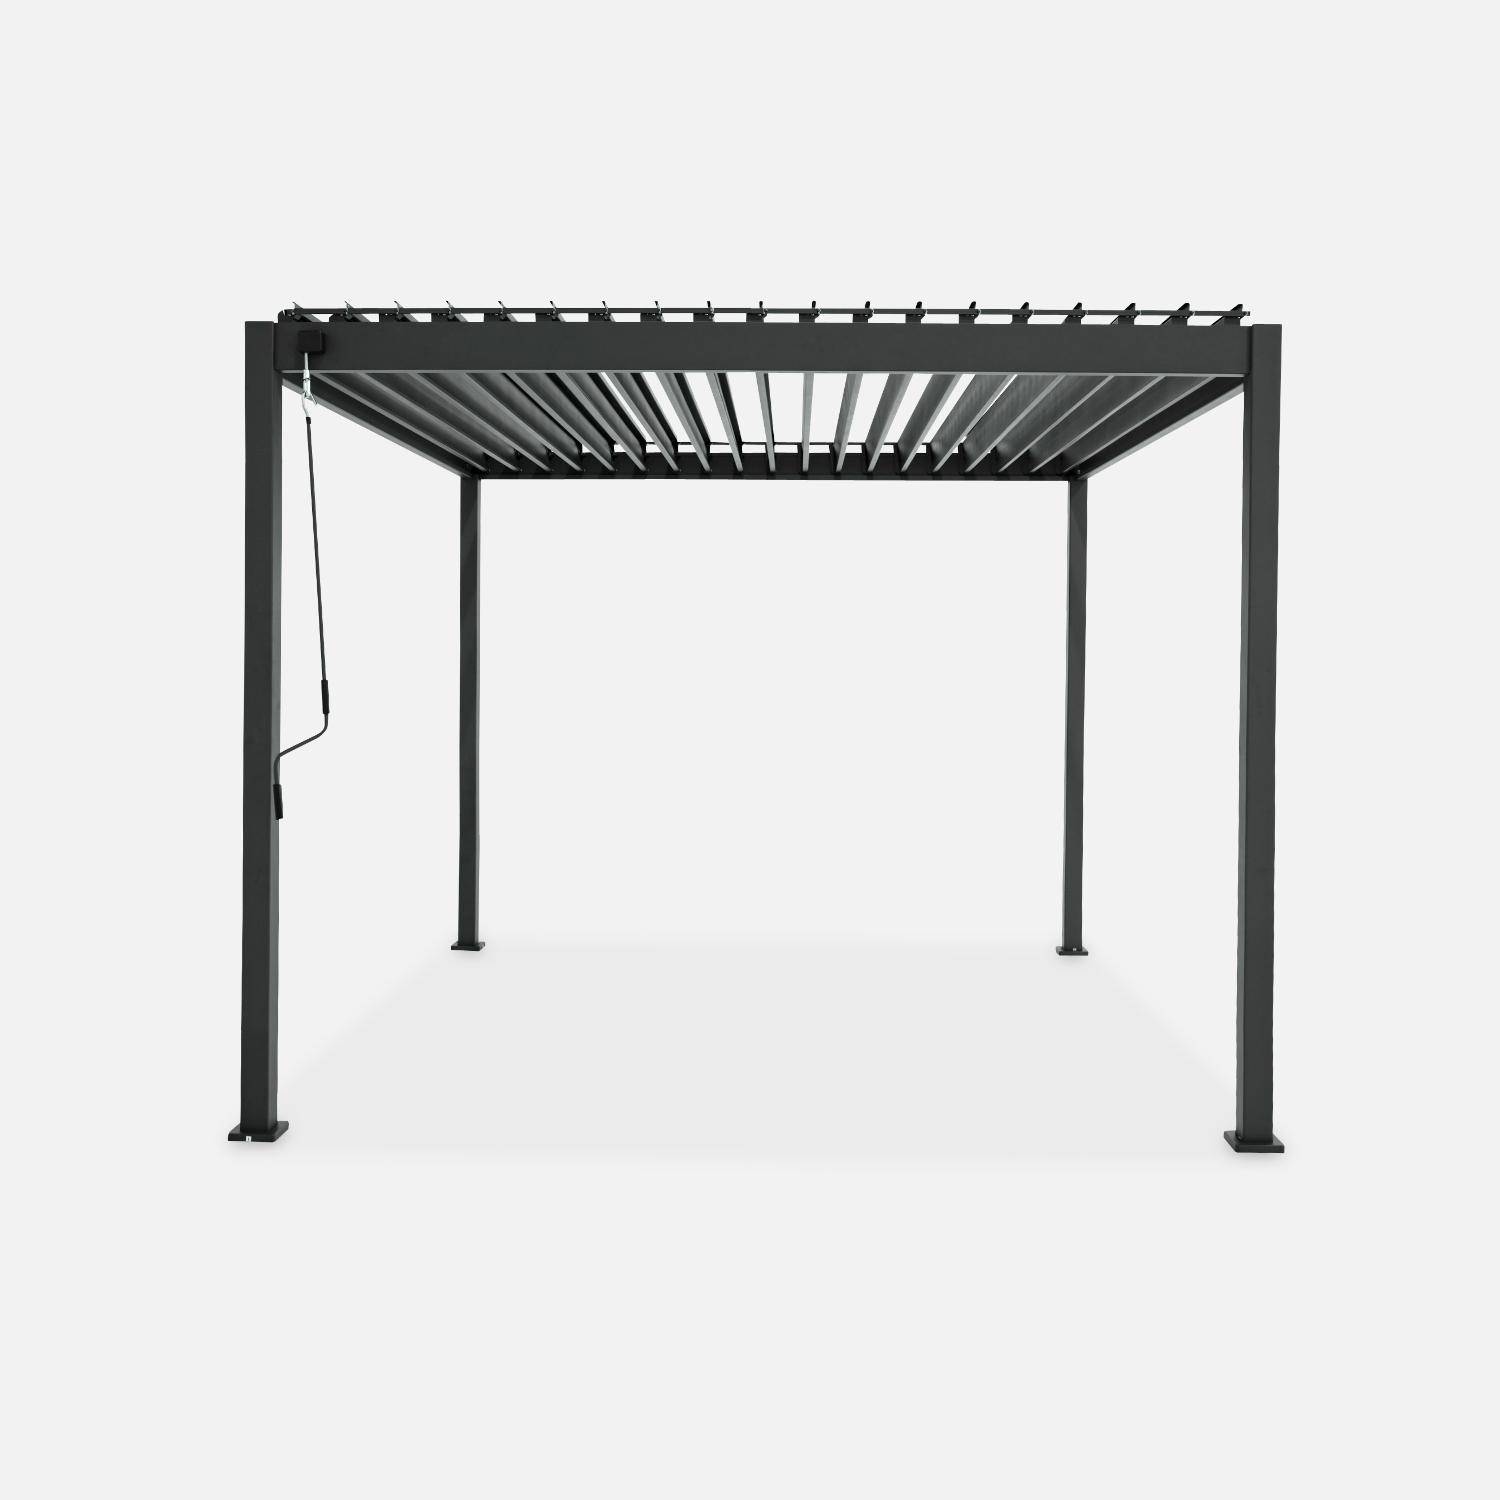 Pergola bioclimatica grigio antracite - Triomphe - 300x300cm, alluminio, con lamelle orientabili  Photo6